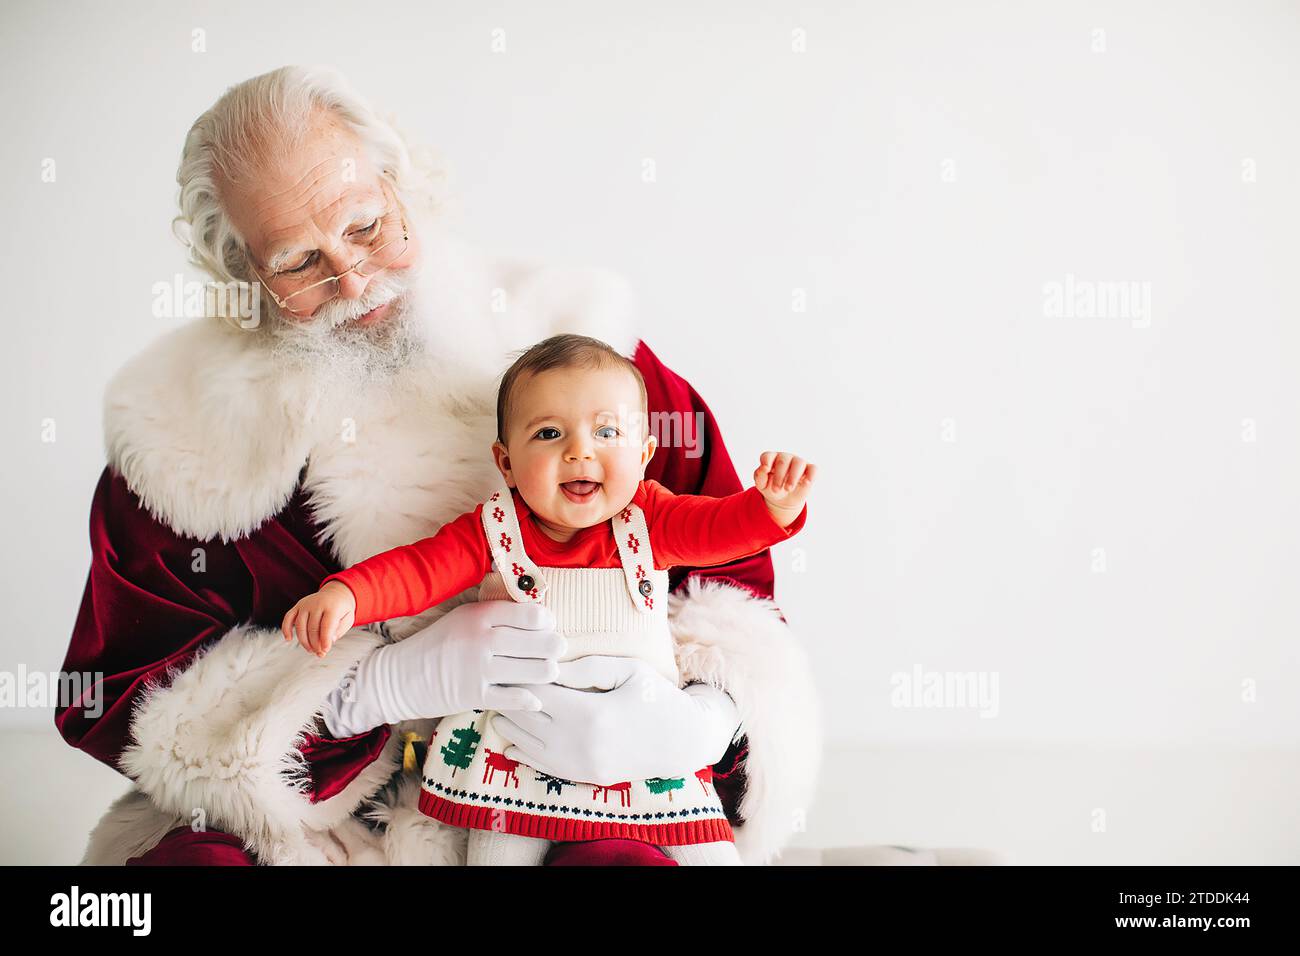 Kleines Mädchen im weihnachtsoutfit, das auf dem Schoß des weihnachtsmanns sitzt Stockfoto